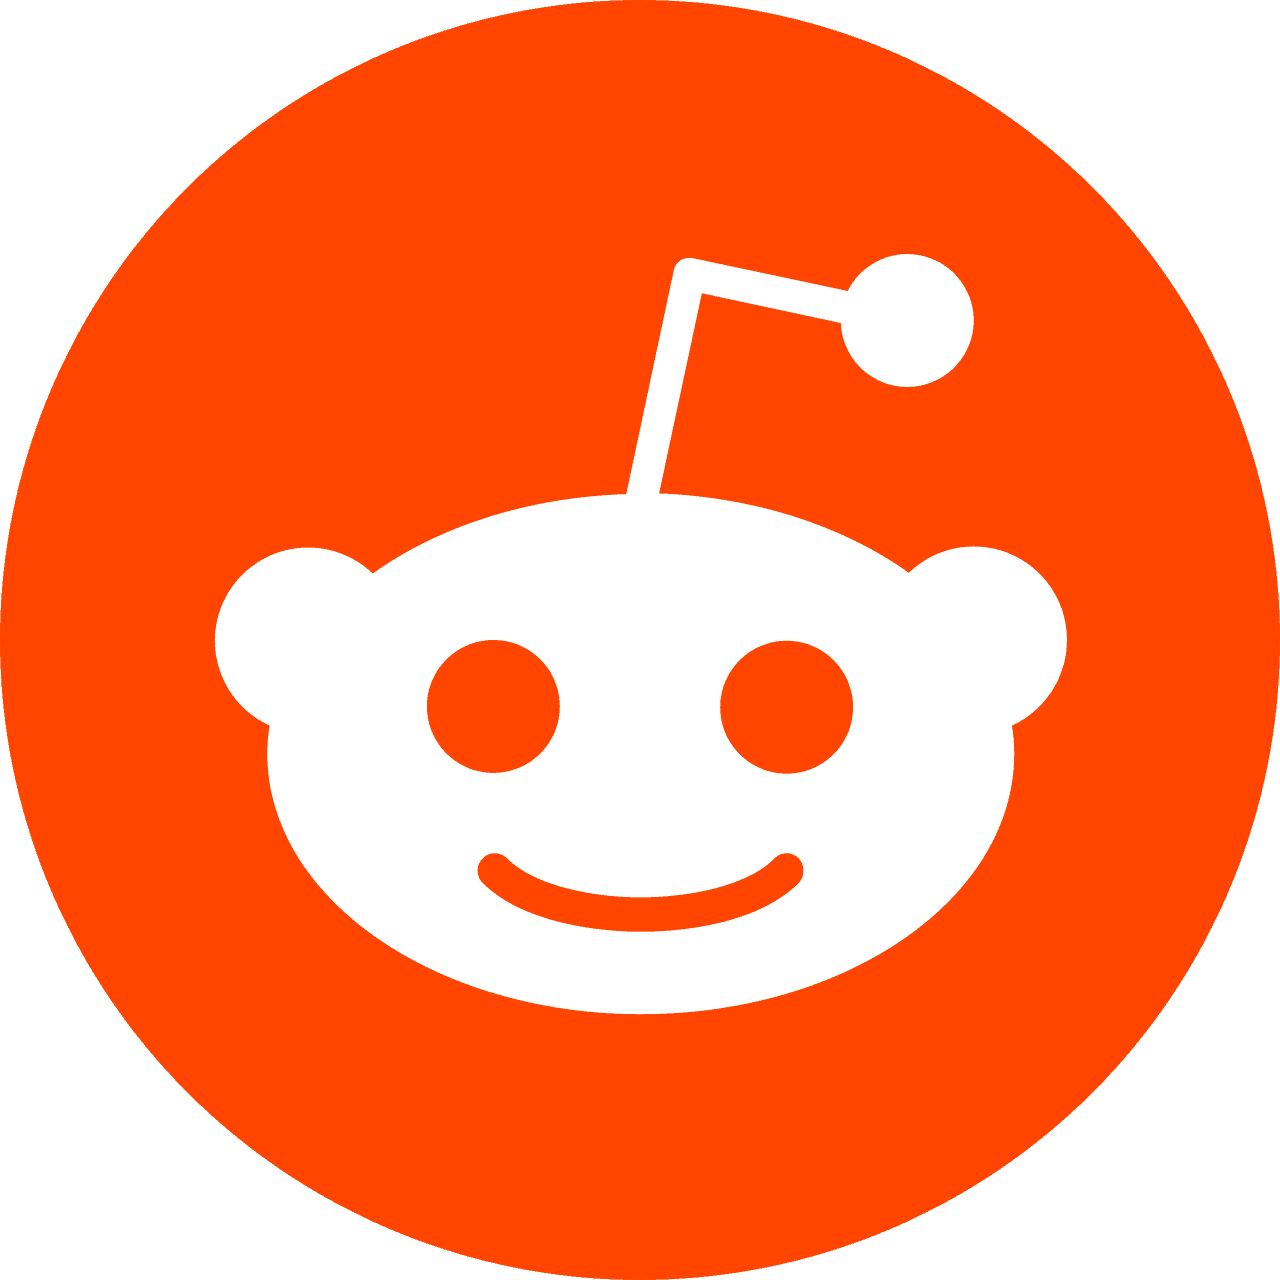 reddit-logo-16-1280x1280.png